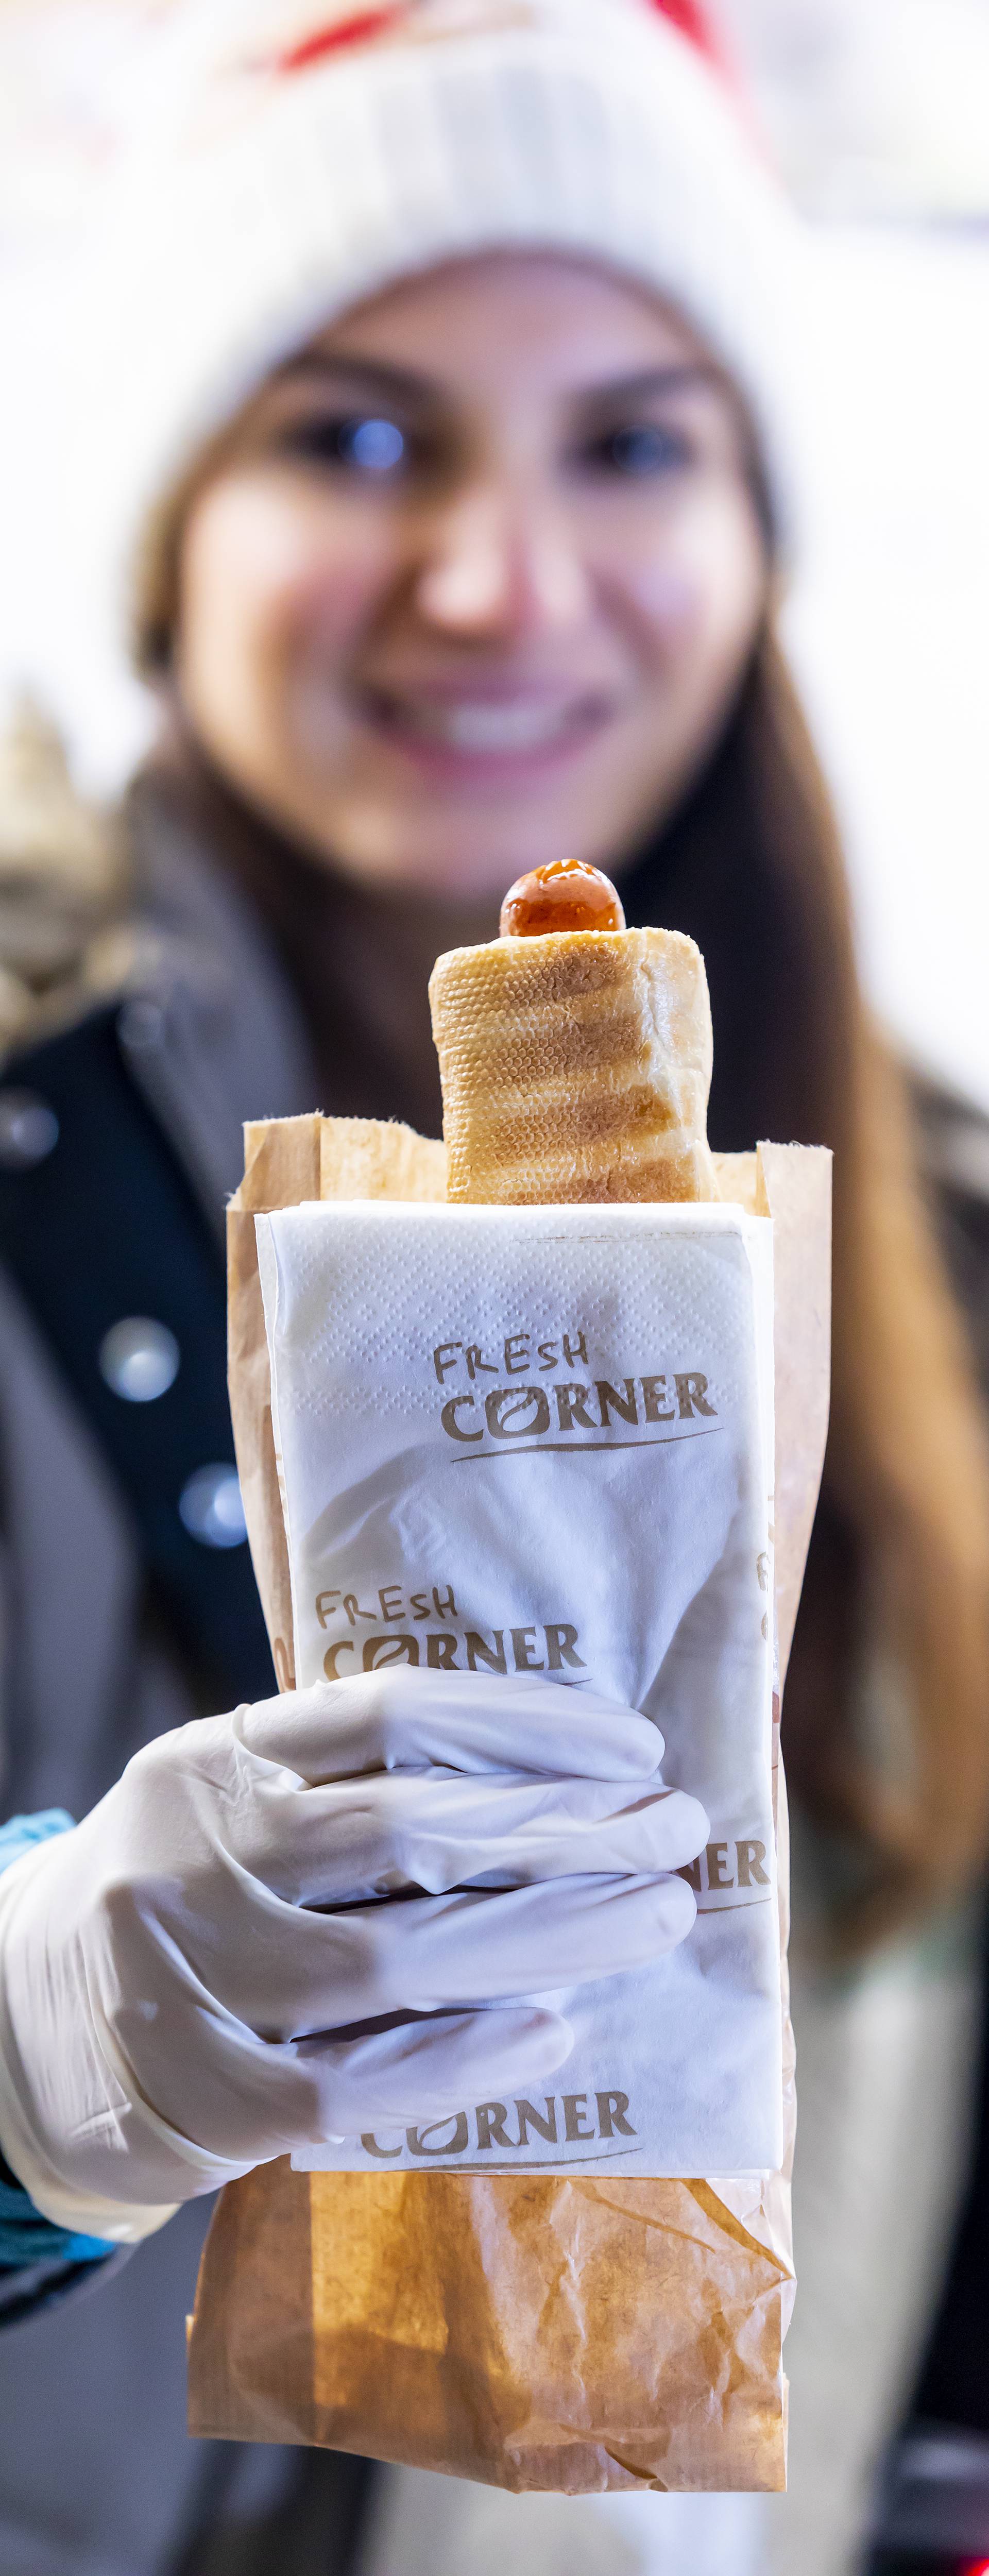 Probajte najbolji hot dog iz Fresh Corner kućica na Adventu diljem Hrvatske!